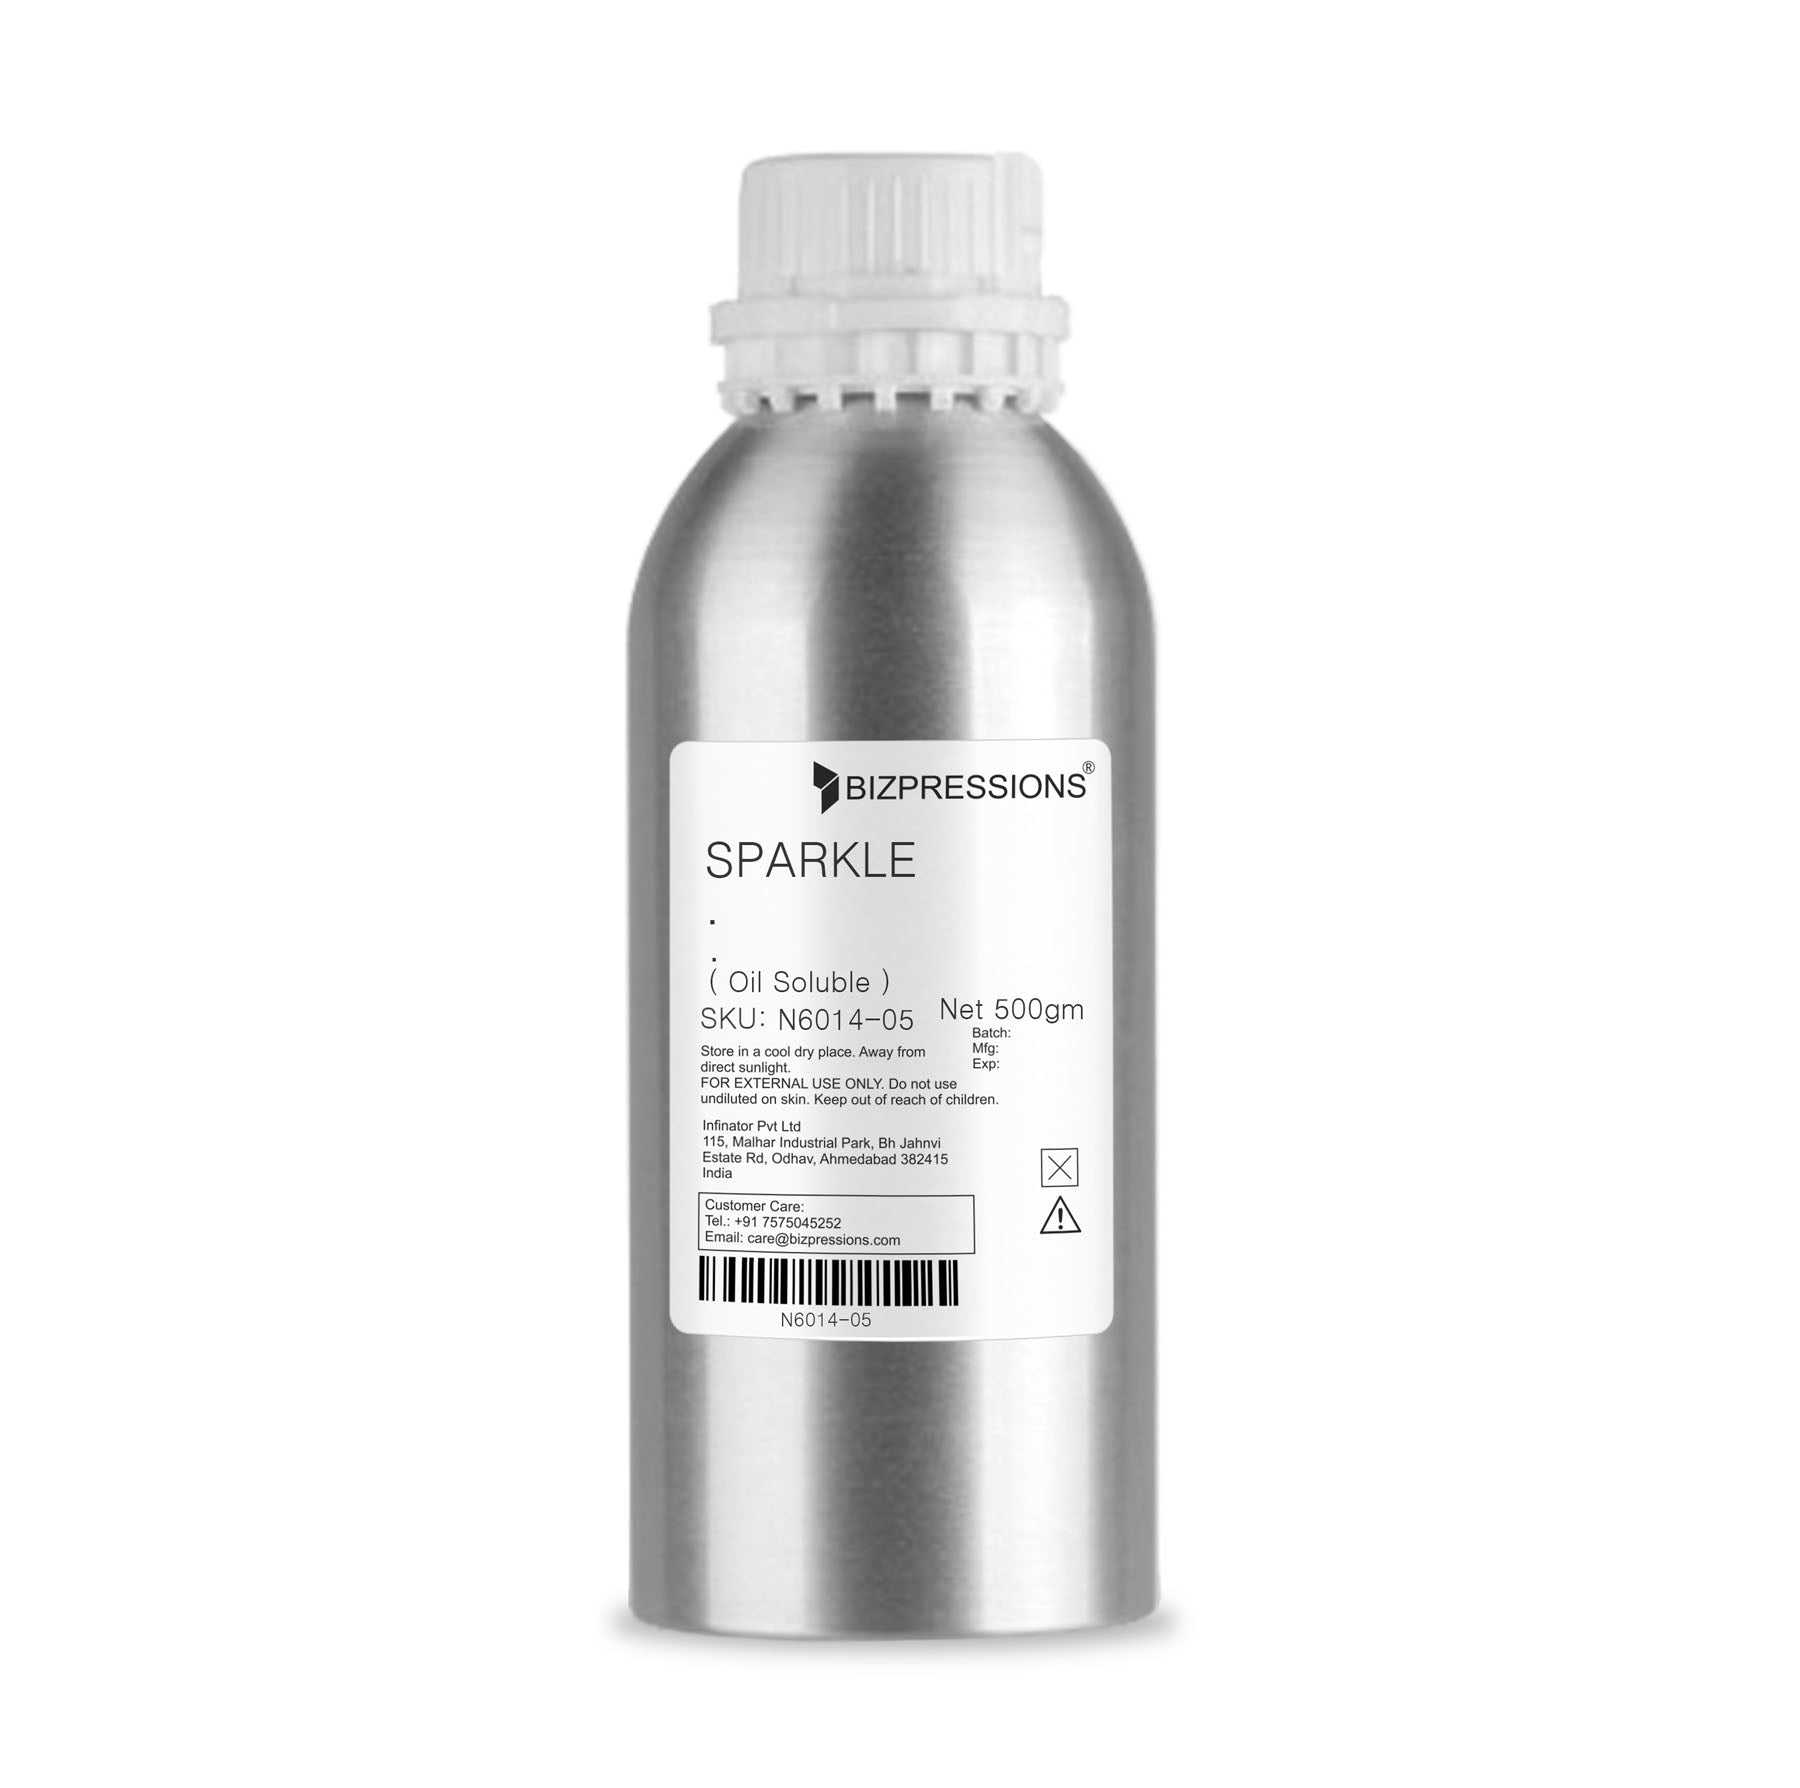 SPARKLE - Fragrance ( Oil Soluble ) - 500 gm